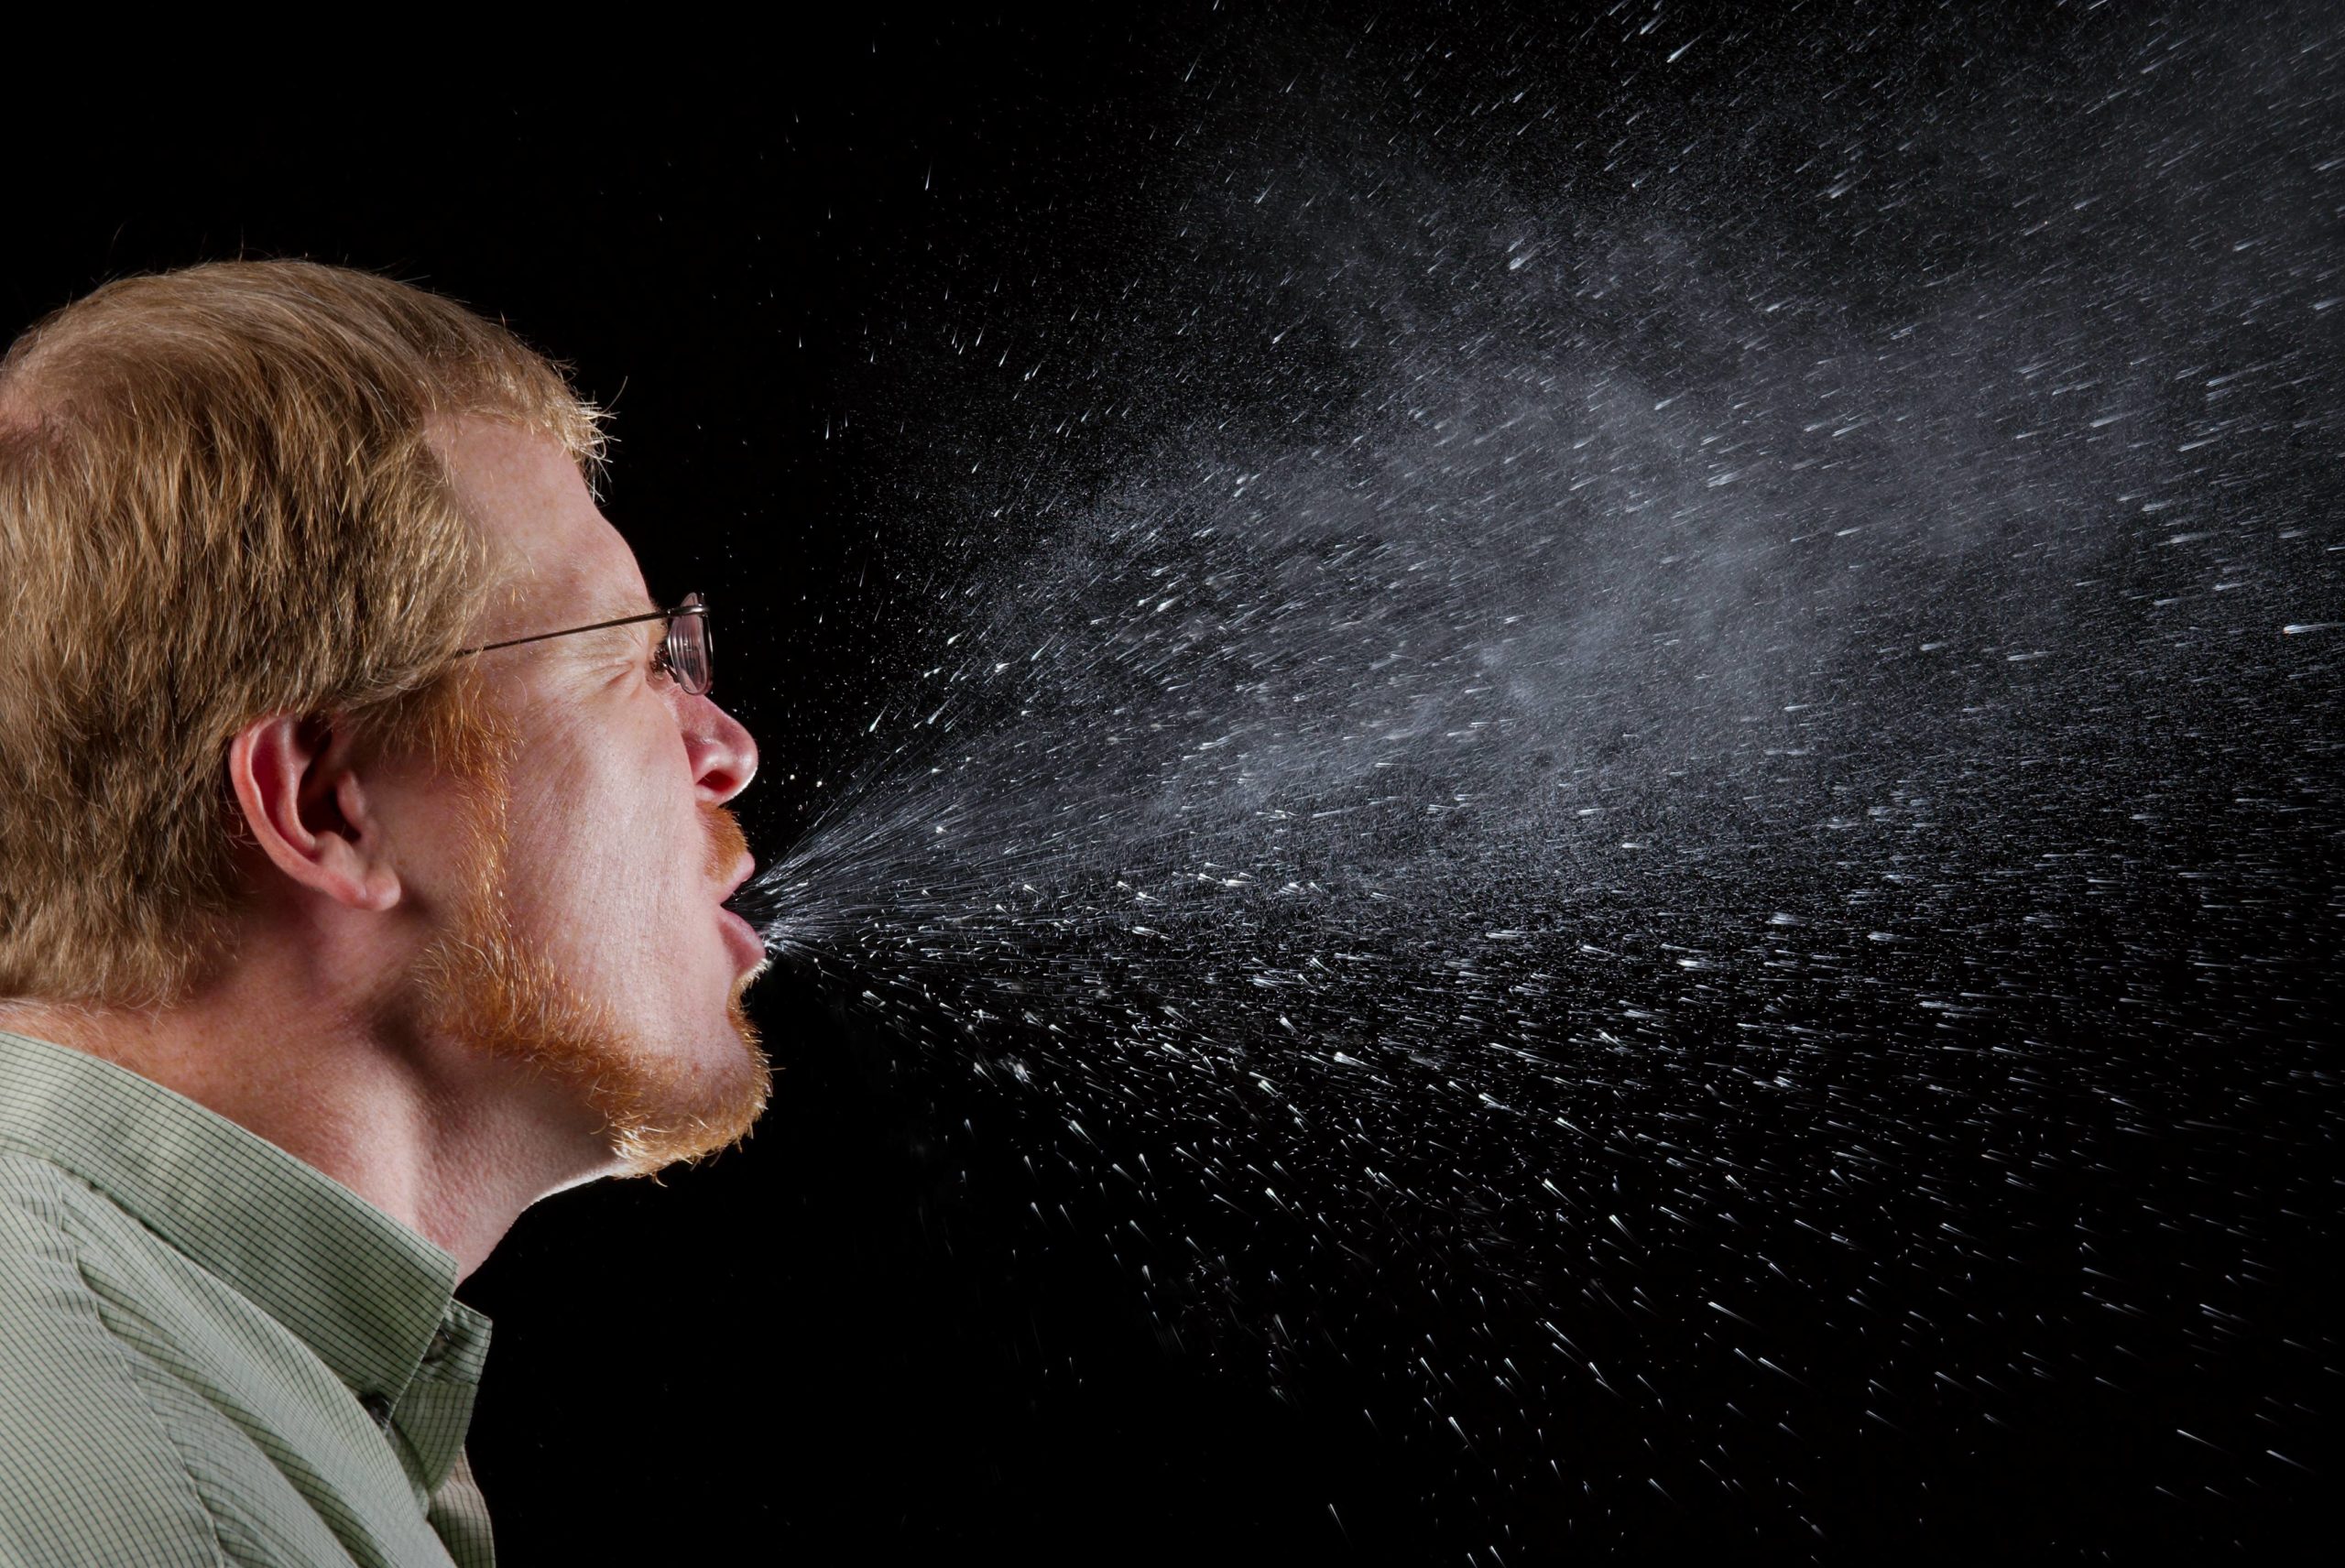 Coronavirus: video muestra cómo un estornudo puede contagiarte